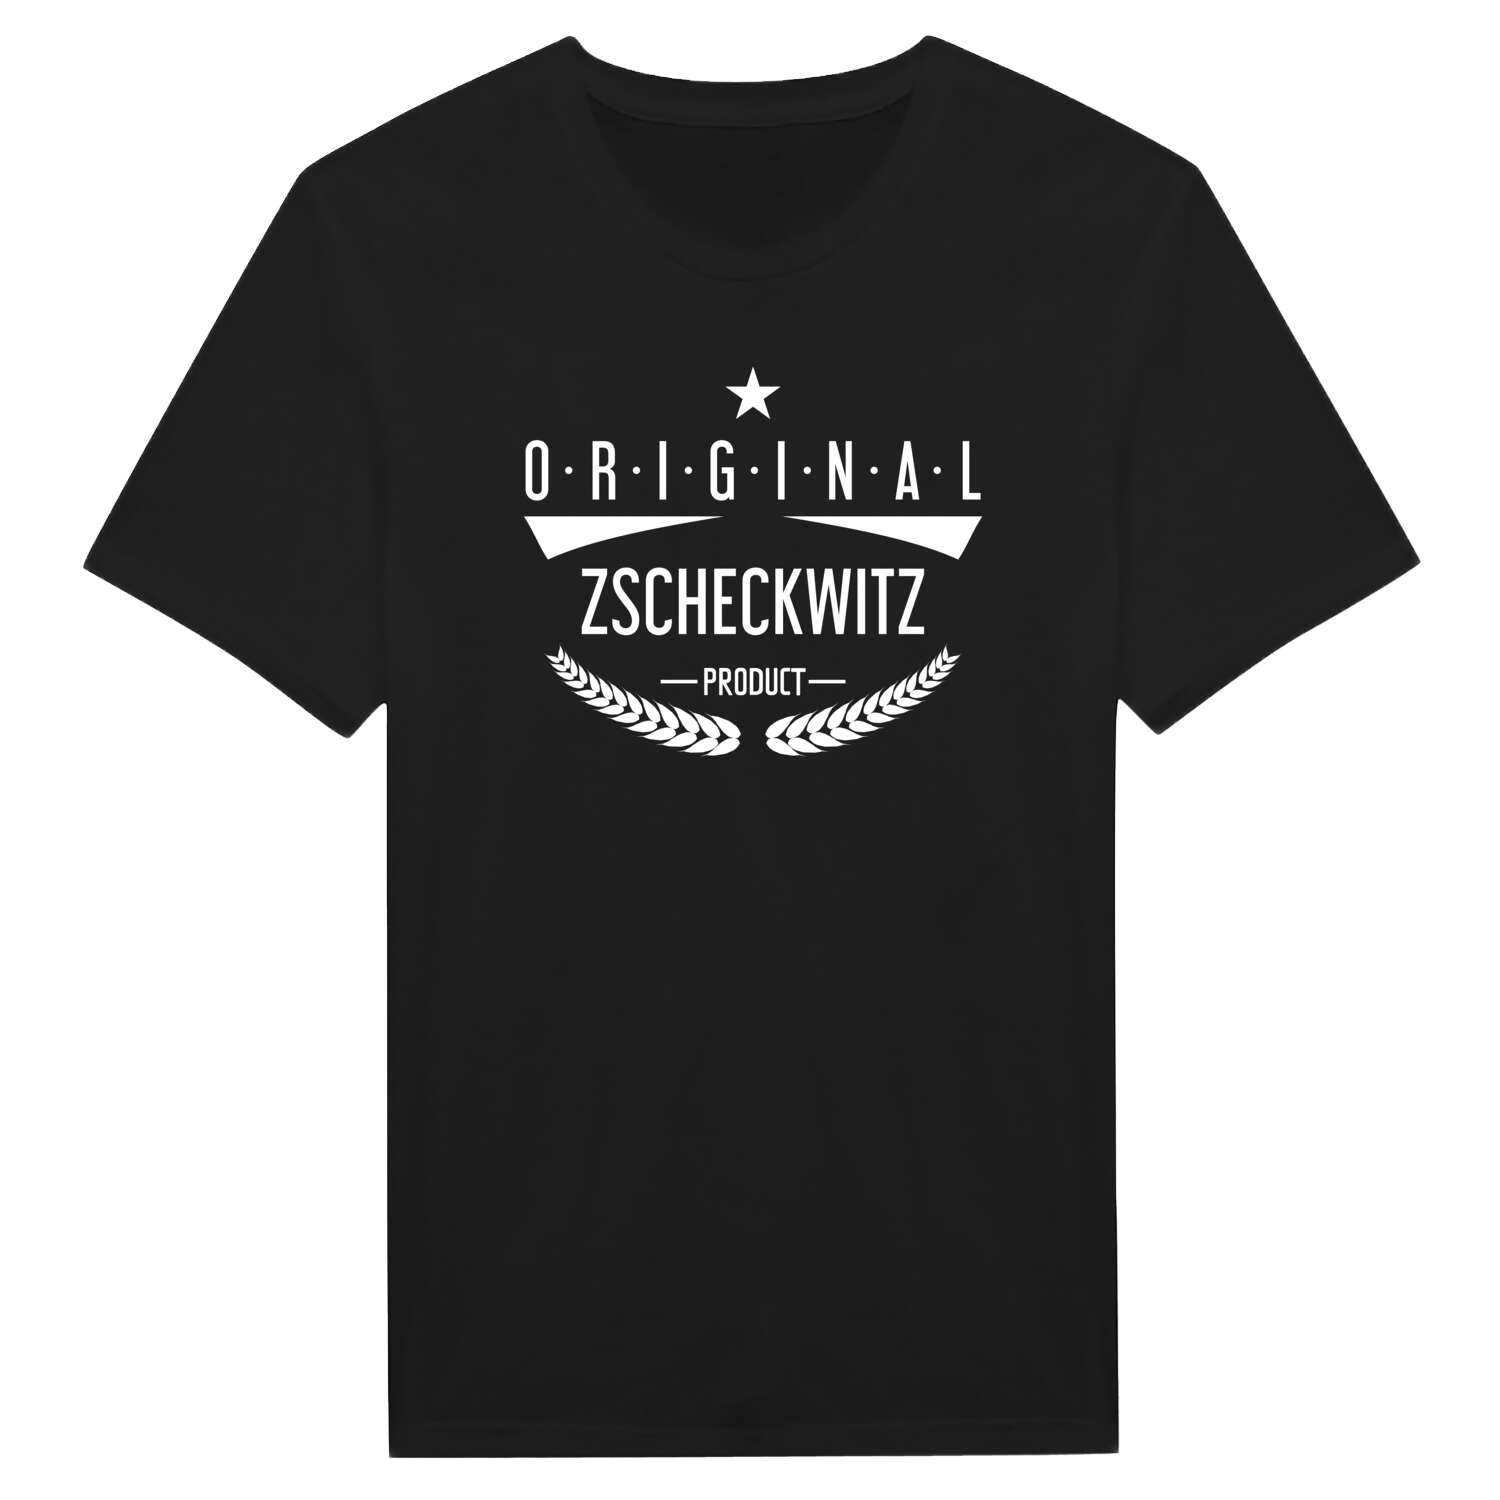 Zscheckwitz T-Shirt »Original Product«